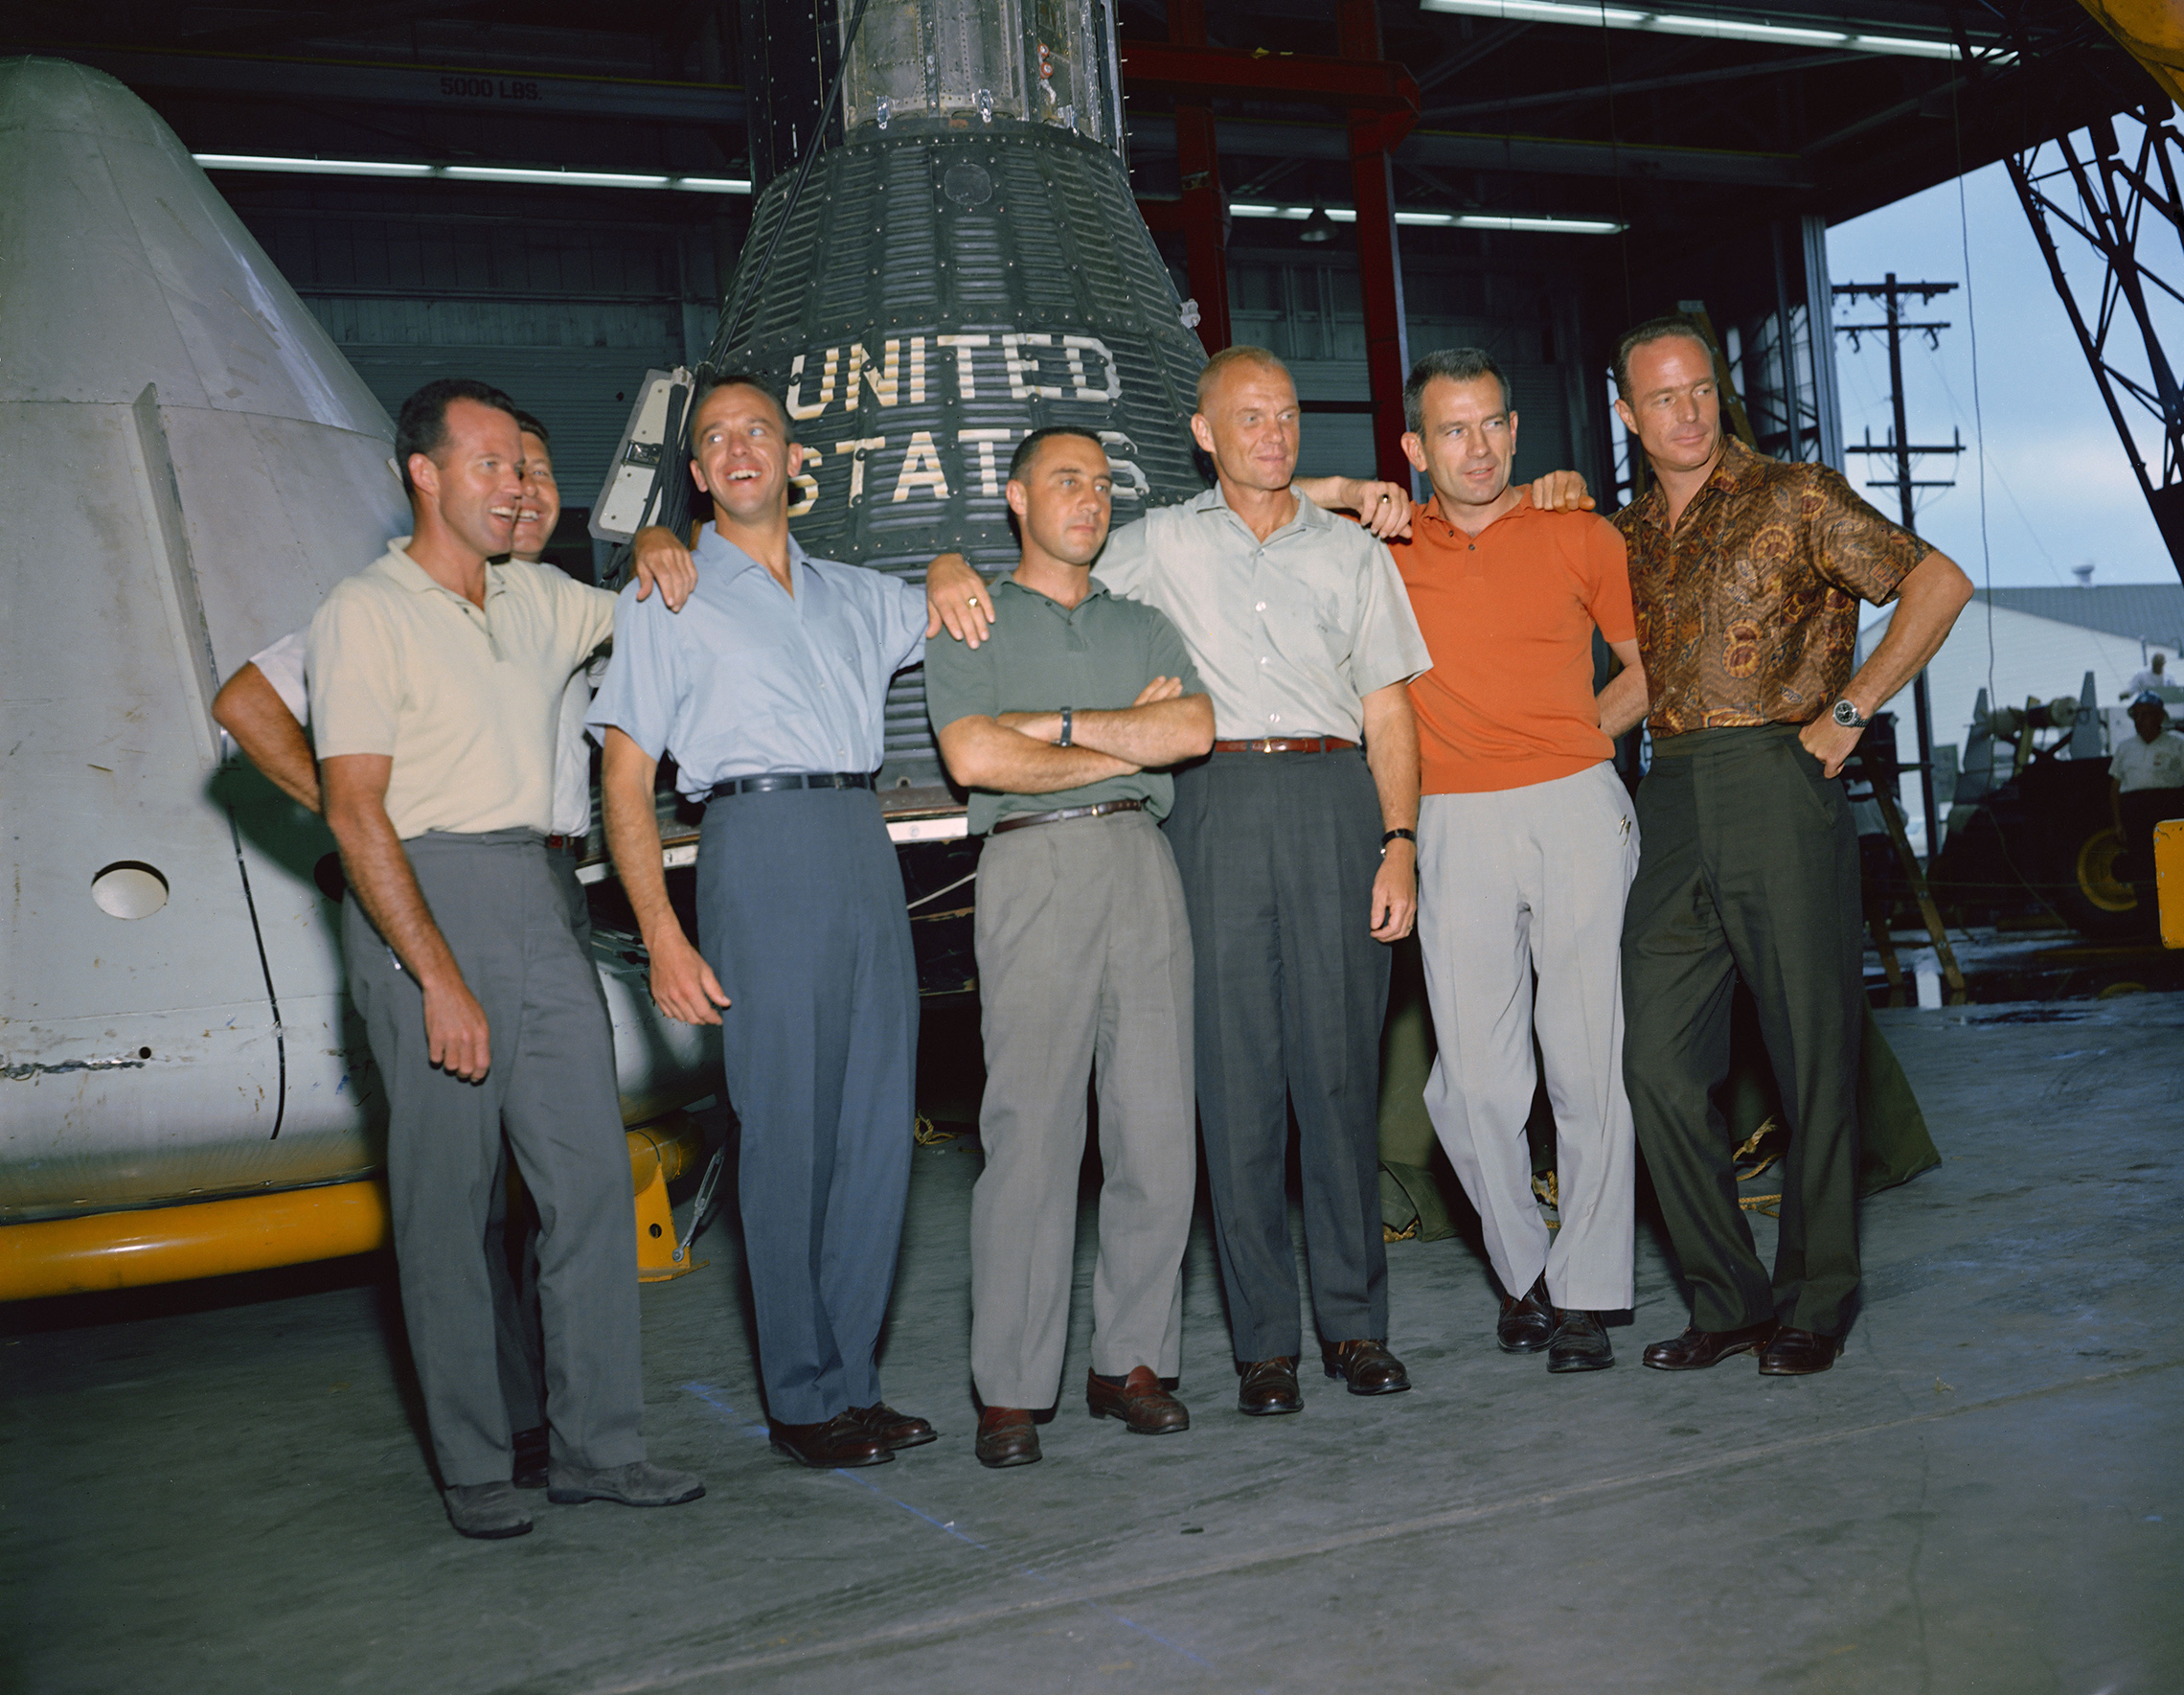 El 9 de abril de 1959, el primer administrador de la NASA, el Dr. Keith Glennan, anunció los nombres del primer grupo de astronautas de la agencia en una conferencia de prensa en Washington, D. C., ahora conocidos como los Siete Originales, que incluían a tres aviadores navales, M. Scott Carpenter, Walter M. Schirra Jr. y Alan B. Shepard Jr.; tres pilotos de la Fuerza Aérea, L. Gordon Cooper Jr., Virgil I. (Gus) Grissom y Donald K. (Deke) Slayton; junto con el aviador del Cuerpo de Marines John H. Glenn Jr., esta foto de grupo de los astronautas originales de Mercury fue tomada en junio de 1963 en el Centro de Naves Espaciales Tripuladas (MSC), ahora Centro Espacial Johnson, en Houston, Texas. Los astronautas son, de izquierda a derecha: Cooper, Schirra, Shepard, Grissom, Glenn, Slayton y Carpenter. El Proyecto Mercurio se convirtió en la primera empresa importante de la NASA. Los objetivos del programa eran colocar una nave espacial con clasificación humana en órbita alrededor de la Tierra, observar el desempeño de los astronautas en tales condiciones y recuperar de forma segura al astronauta y a la nave espacial. Los vuelos de Mercury demostraron que los humanos podían vivir y trabajar en el espacio, y allanaron el camino para los programas Gemini y Apolo, así como para todos los vuelos espaciales tripulados posteriores. (NASA)'s first administrator, Dr. Keith Glennan, announced the names of the agency's first group of astronauts at a news conference in Washington, D.C. Now known as the "Original Seven," they included three Naval aviators, M. Scott Carpenter, Walter M. Schirra Jr., and Alan B. Shepard Jr.; three Air Force pilots, L. Gordon Cooper Jr., Virgil I. (Gus) Grissom, and Donald K. (Deke) Slayton; along with Marine Corps aviator John H. Glenn Jr. This group photo of the original Mercury astronauts was taken in June 1963 at the Manned Spacecraft Center (MSC), now Johnson Space Center, in Houston, Texas. The astronauts are, left to right: Cooper, Schirra, Shepard, Grissom, Glenn, Slayton and Carpenter. Project Mercury became NASA's first major undertaking. The objectives of the program were to place a human-rated spacecraft into orbit around Earth, observe the astronauts' performance in such conditions and safely recover the astronaut and the spacecraft. The Mercury flights proved that humans could live and work in space, and paved the way for the Gemini and Apollo programs as well as for all further human spaceflight. (NASA)